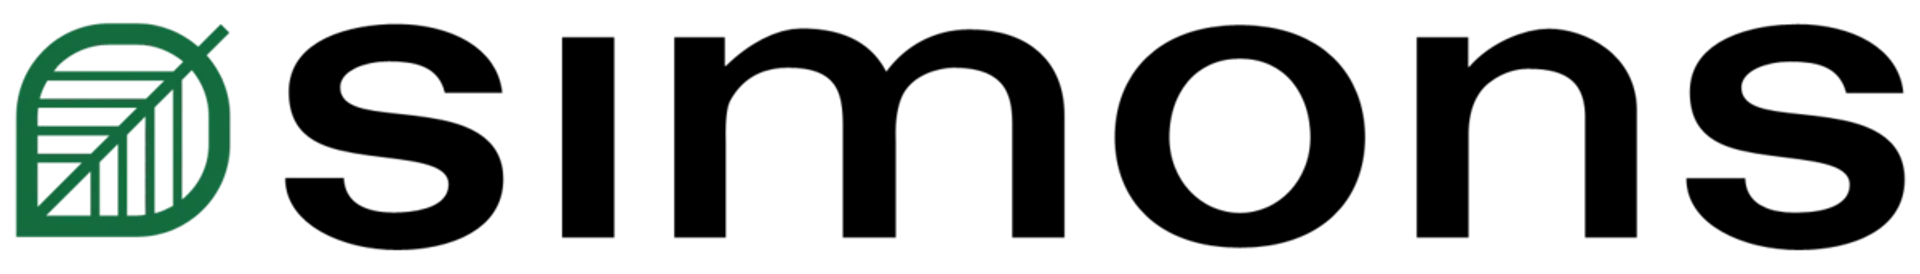 SIMONS logo de circulaires